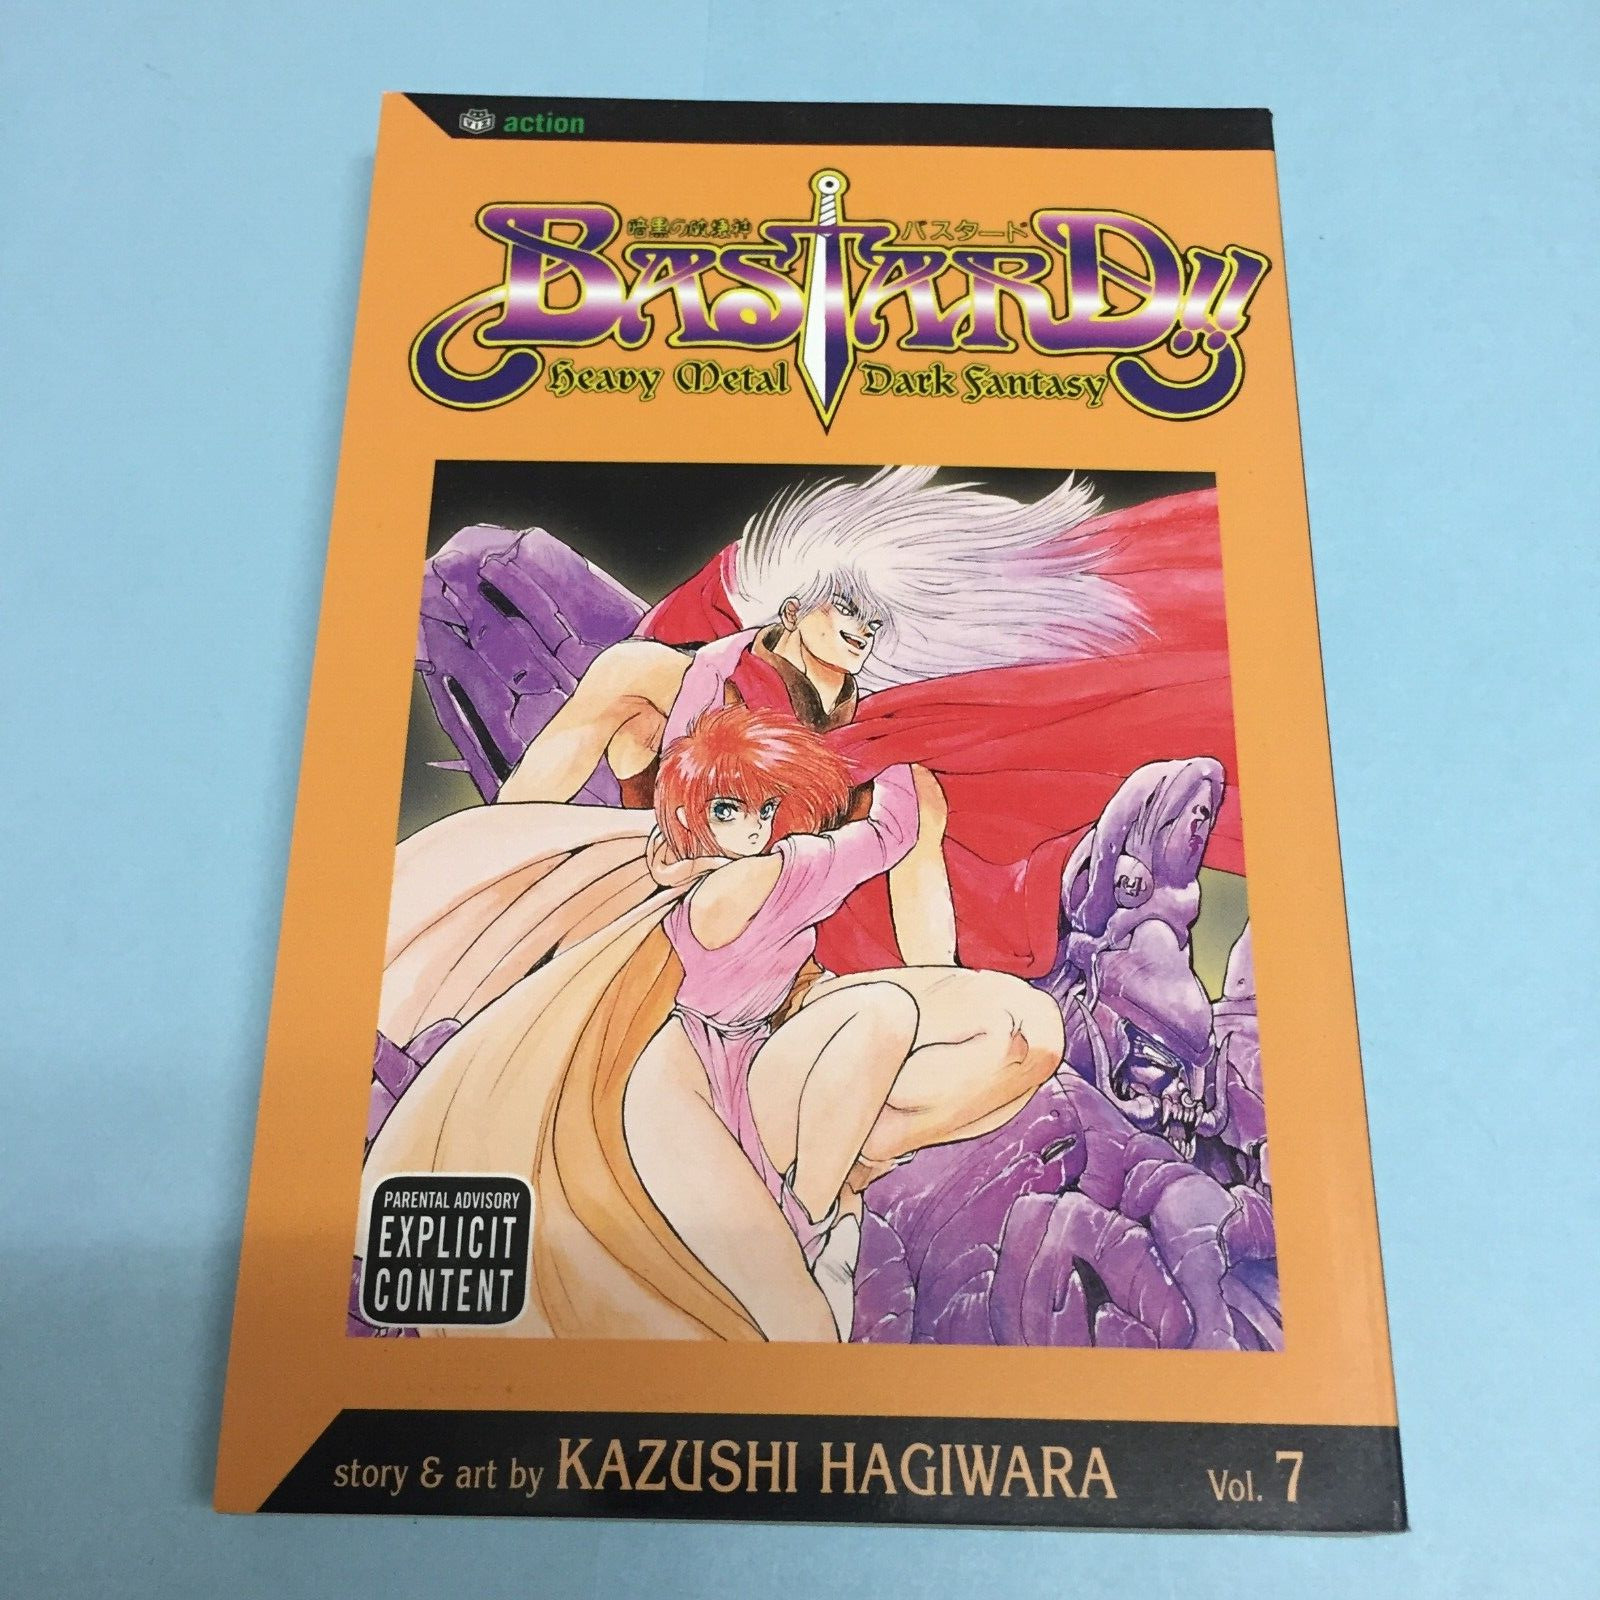 Bastard Volume 7 Manga English Kazushi Hagiwara Heavy Metal Dark Fantasy Vol 7